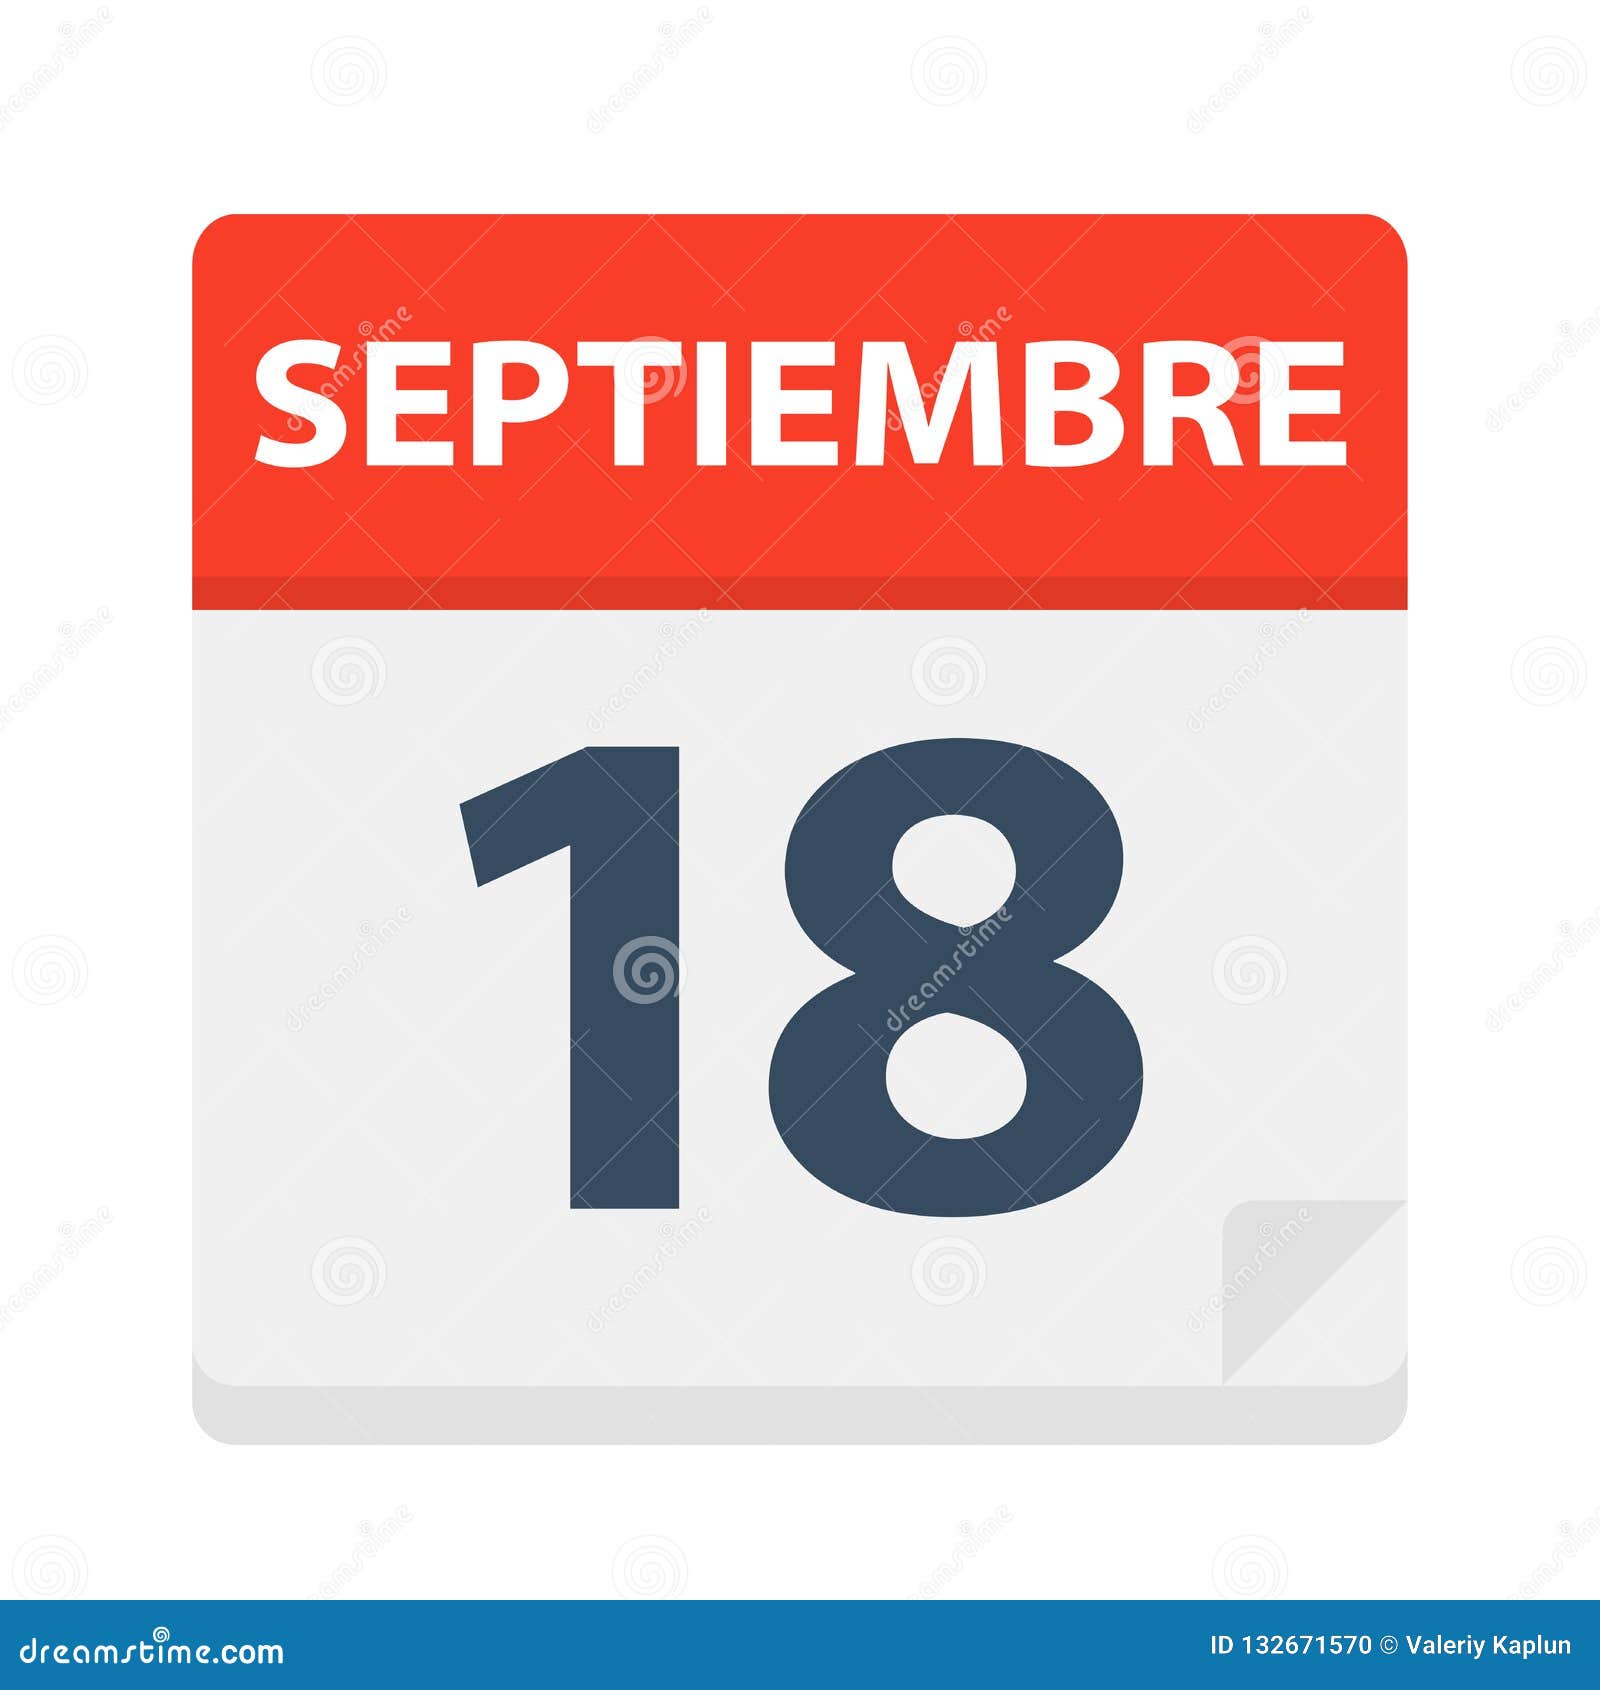 septiembre 18 - calendar icon - september 18.   of spanish calendar leaf